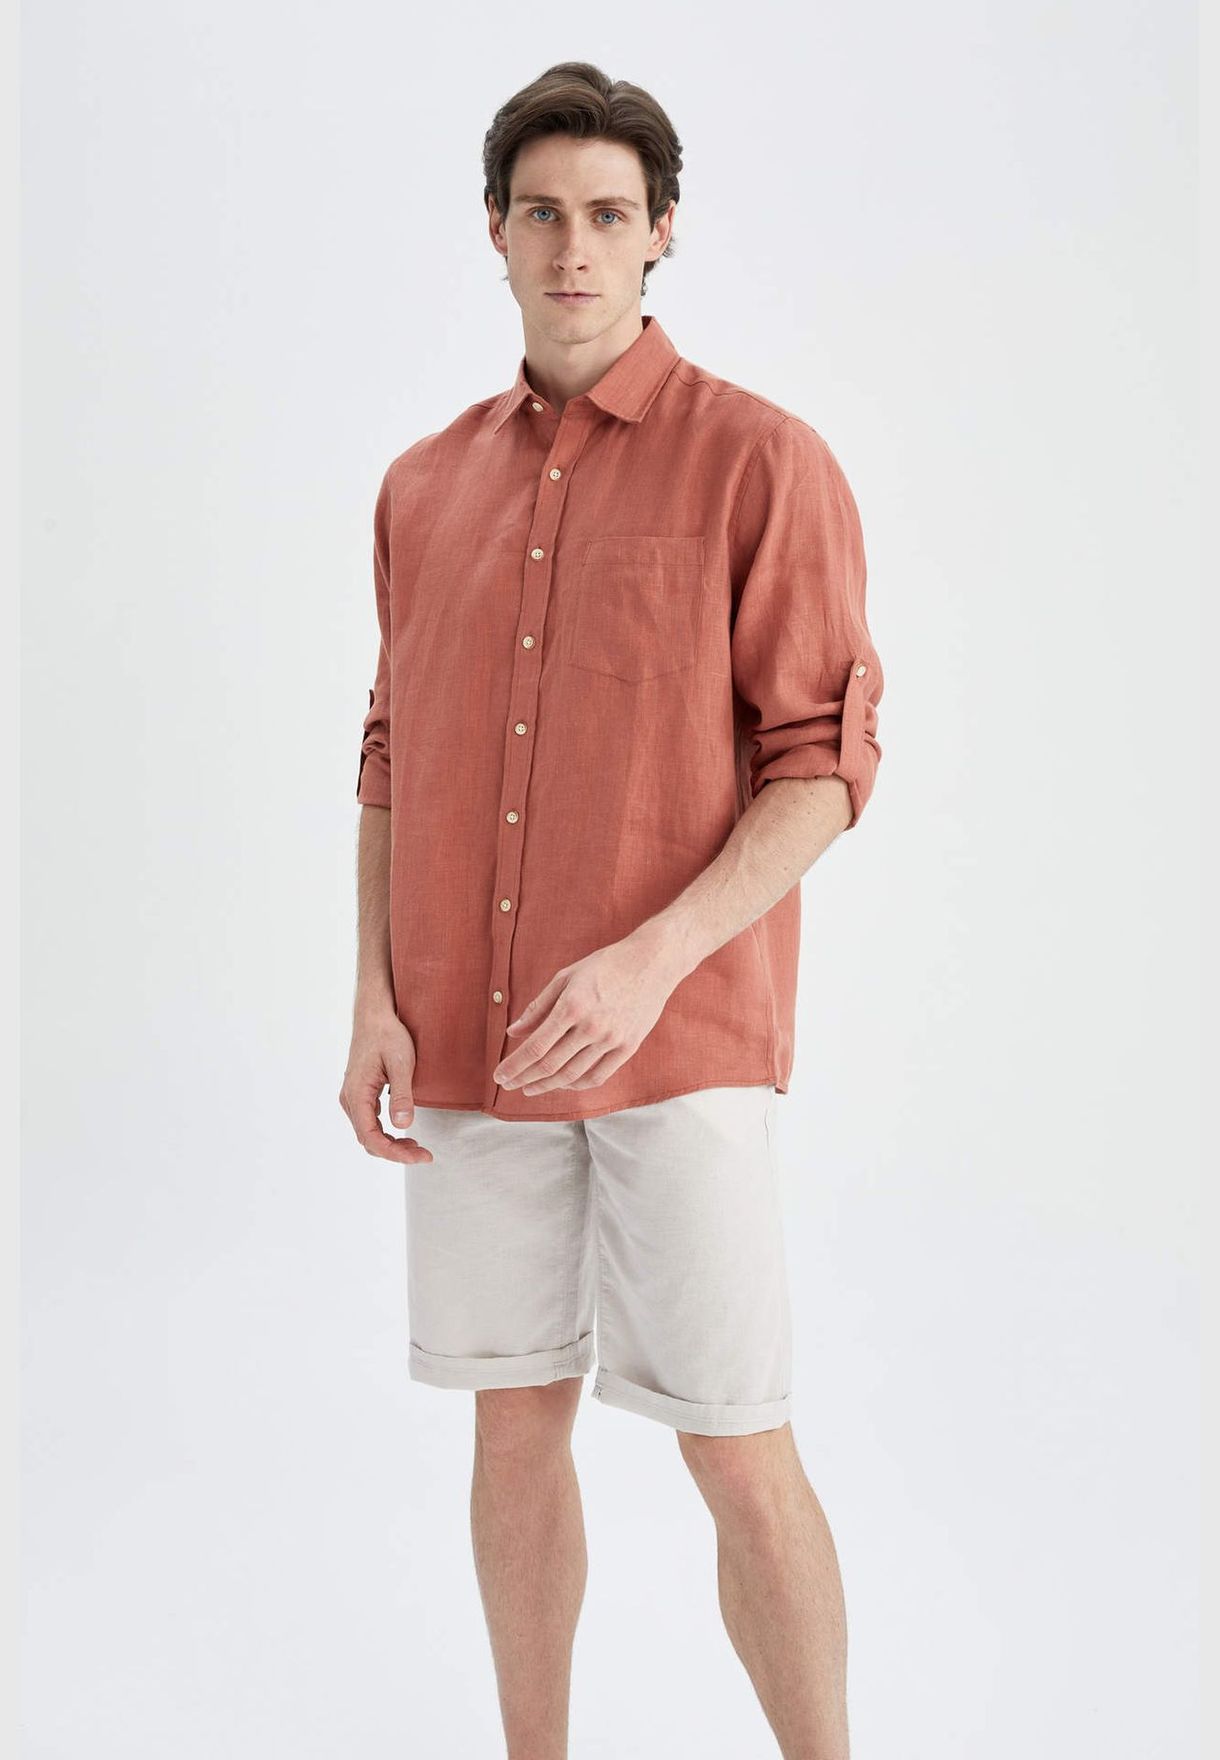 Man Regular Fit Polo Neck Woven Top Long Sleeve Shirt